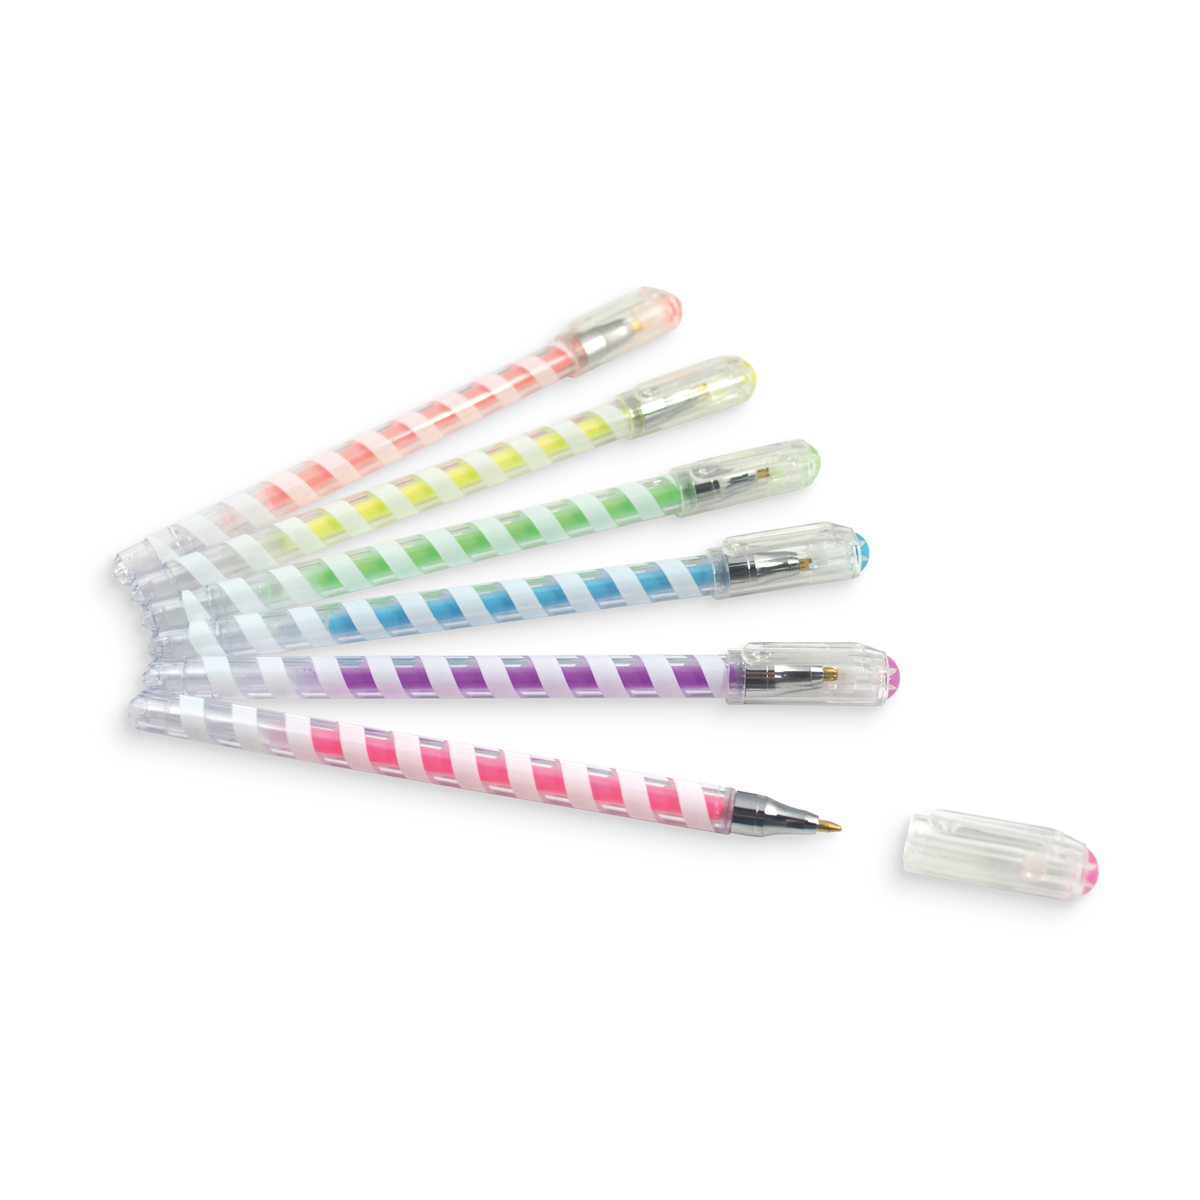 Modern Gel Pens - set of 3 - powerandlightpress